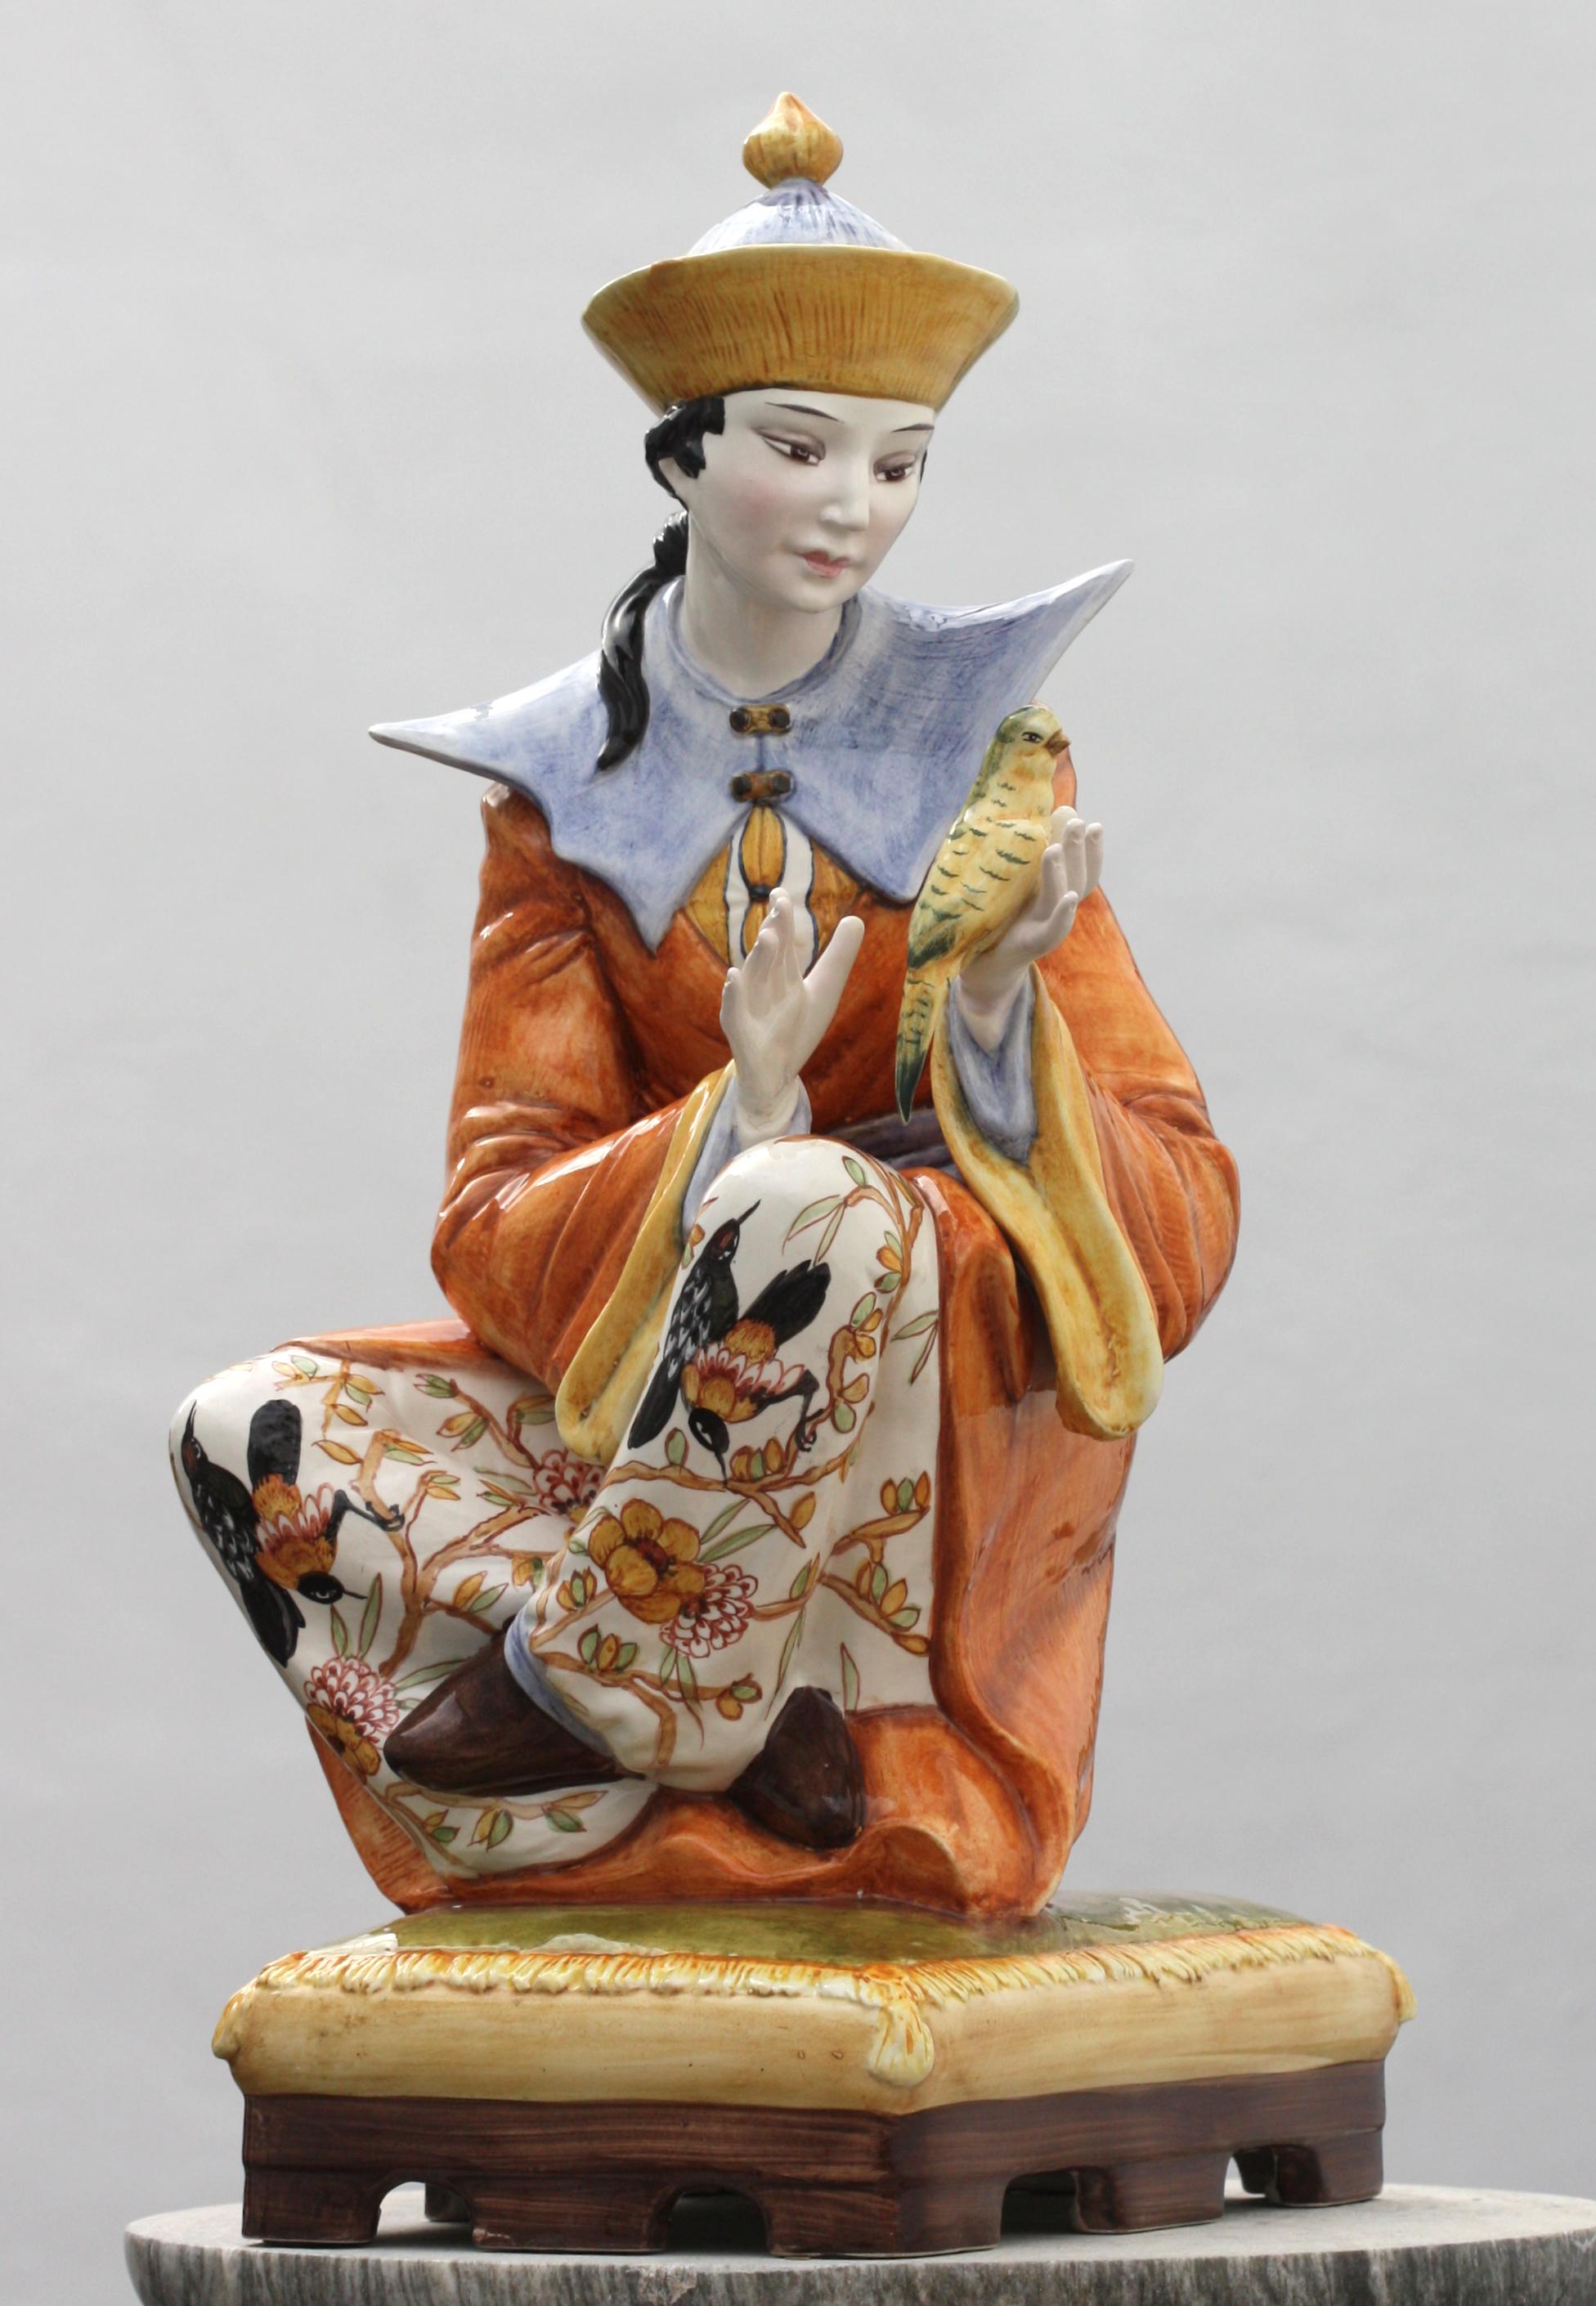 Italienische Majolika Mandarine
Bunt bemalte Darstellung eines jungen Mandarins, der auf einem Kissen sitzt, das früher als Lampe diente. Höhe 26 Zoll, Breite 12 Zoll, Tiefe 14 Zoll.